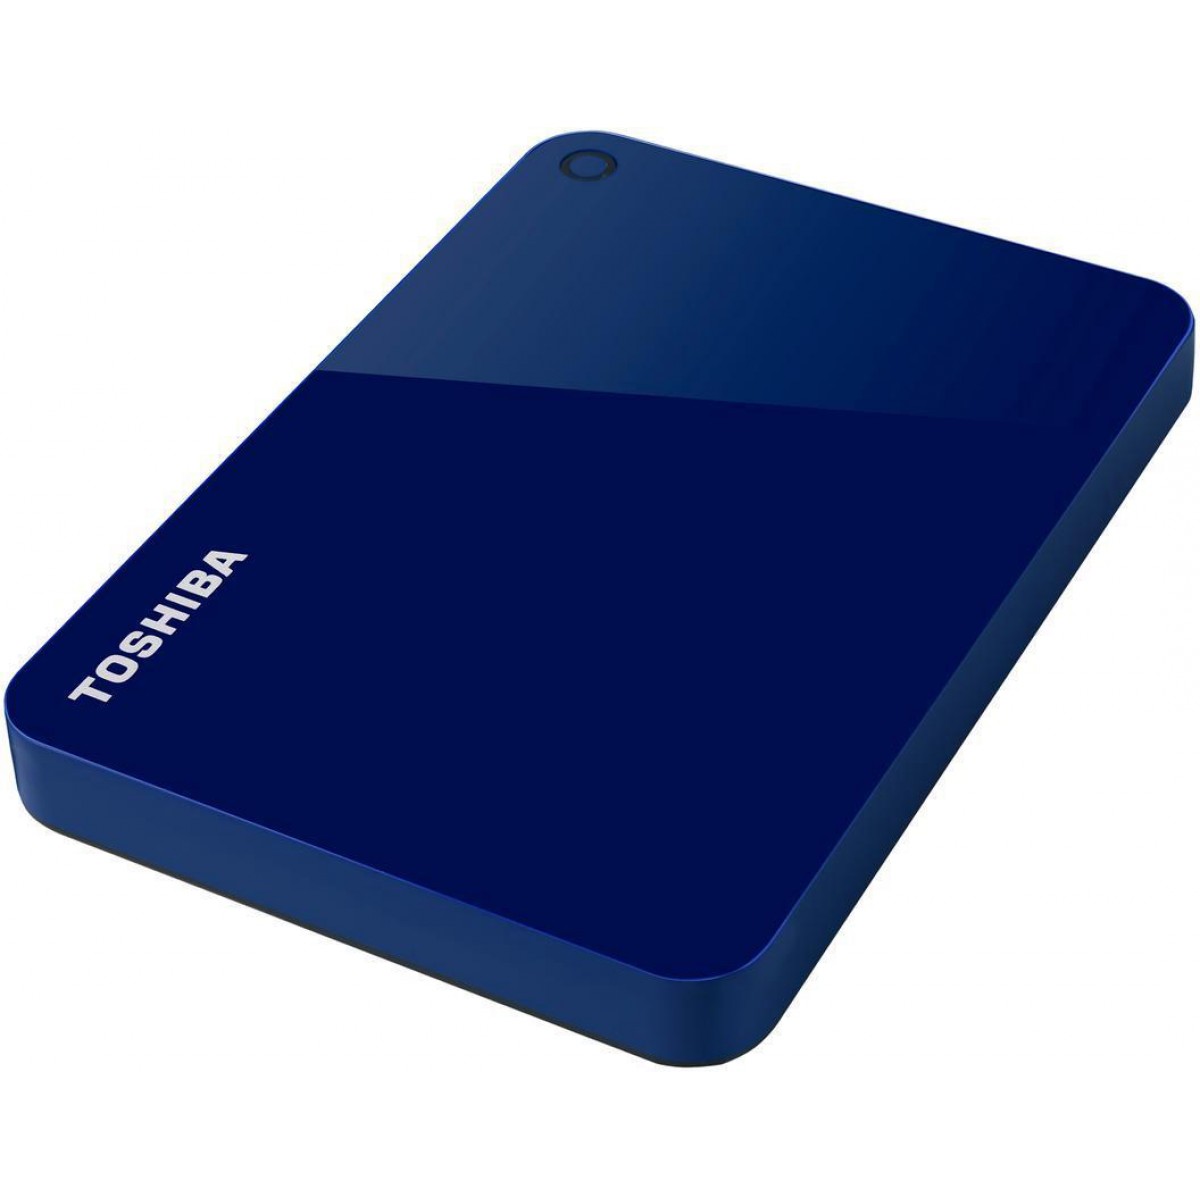 HD Externo Portátil Toshiba Canvio Advance 2TB, USB 3.0, Azul, HDTC920XL3AA